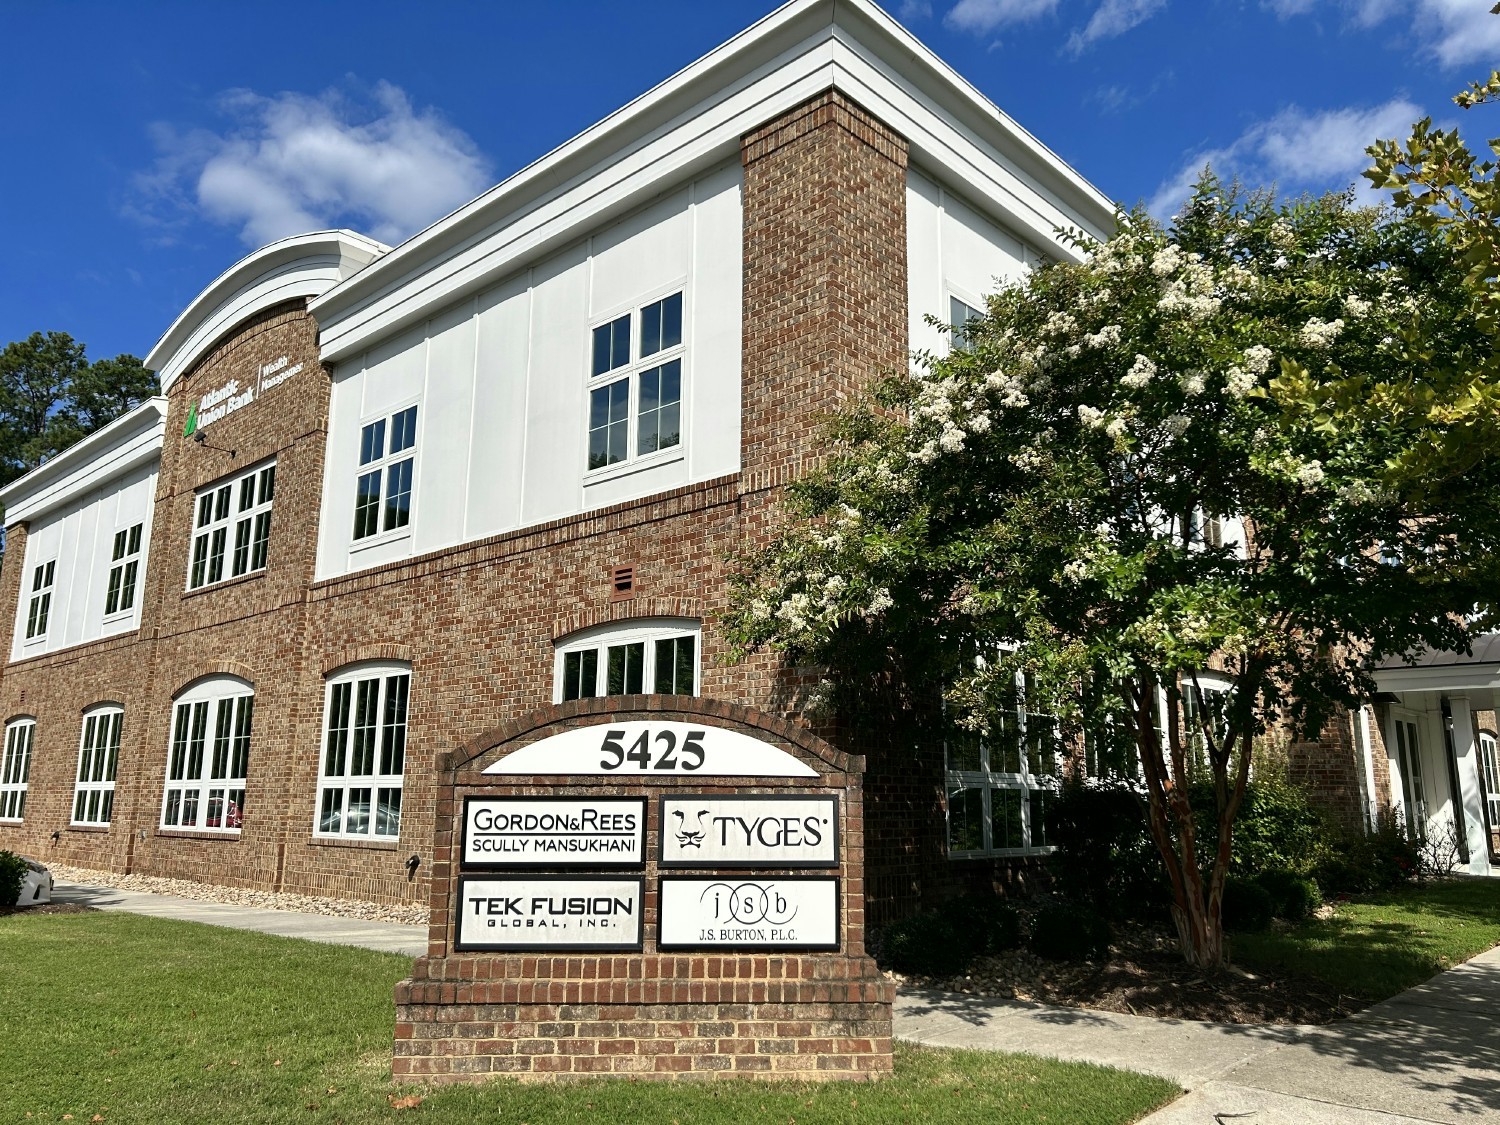 TYGES Headquarters in Williamsburg, VA.